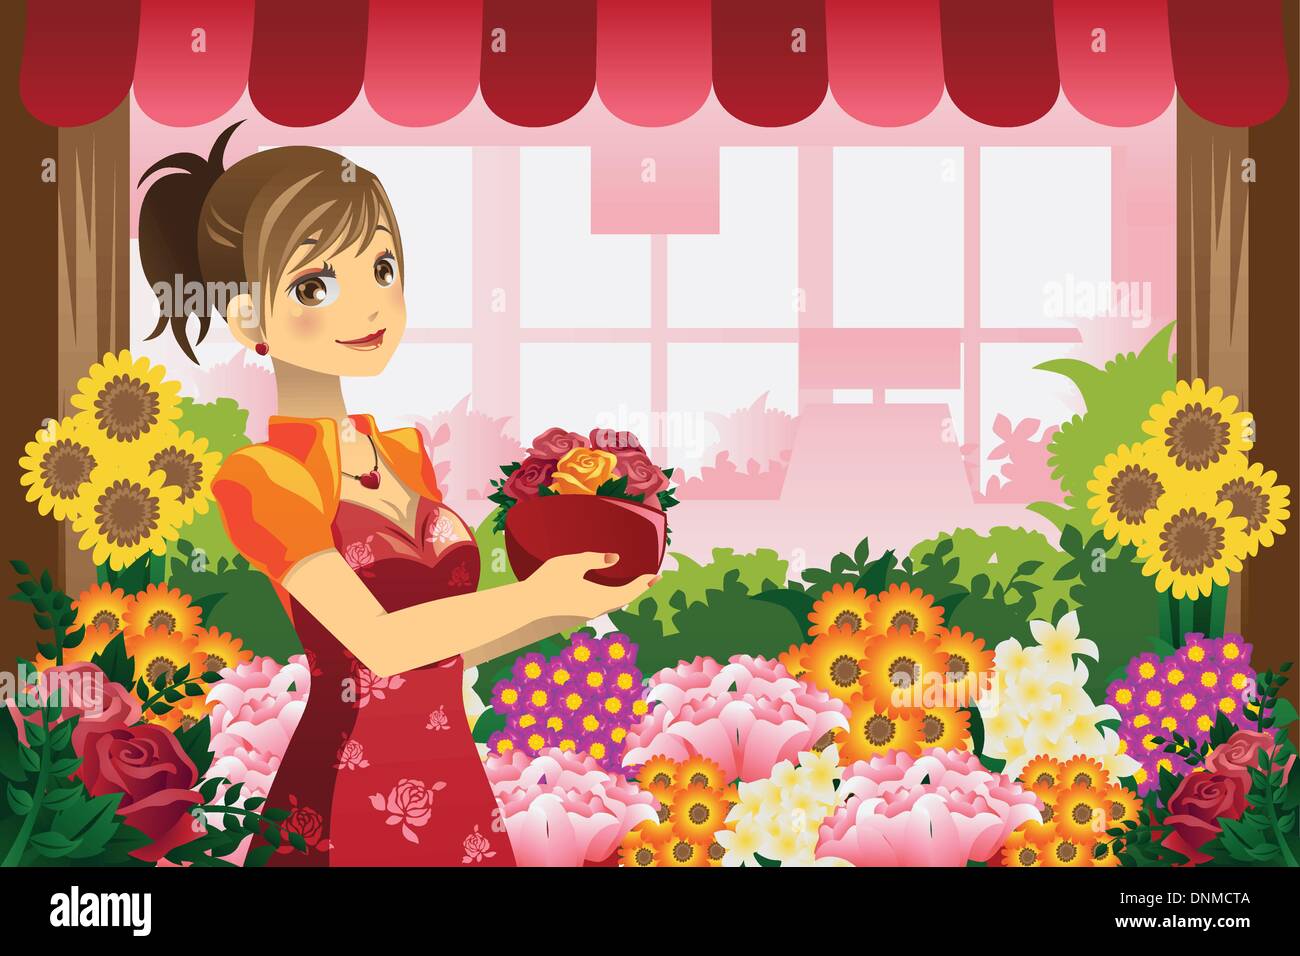 Un vecteur illustration d'un fleuriste fille tenant un pot de fleurs dans la boutique de fleurs Illustration de Vecteur